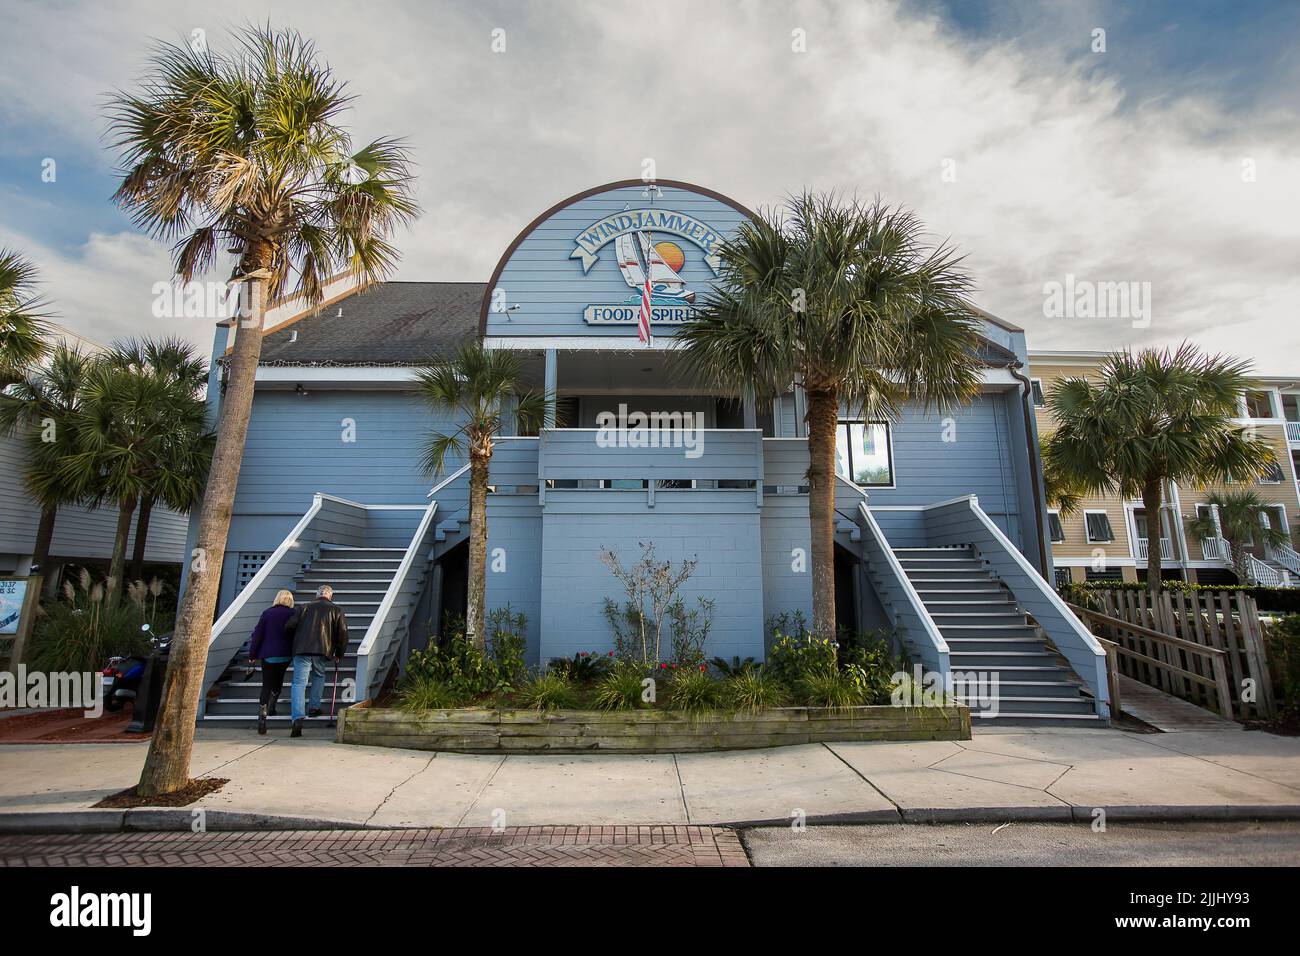 The Windjammer auf der Isle of Palms, S.C. Historic Beach Bar auf der Barrier Island in South Carolina. Stockfoto